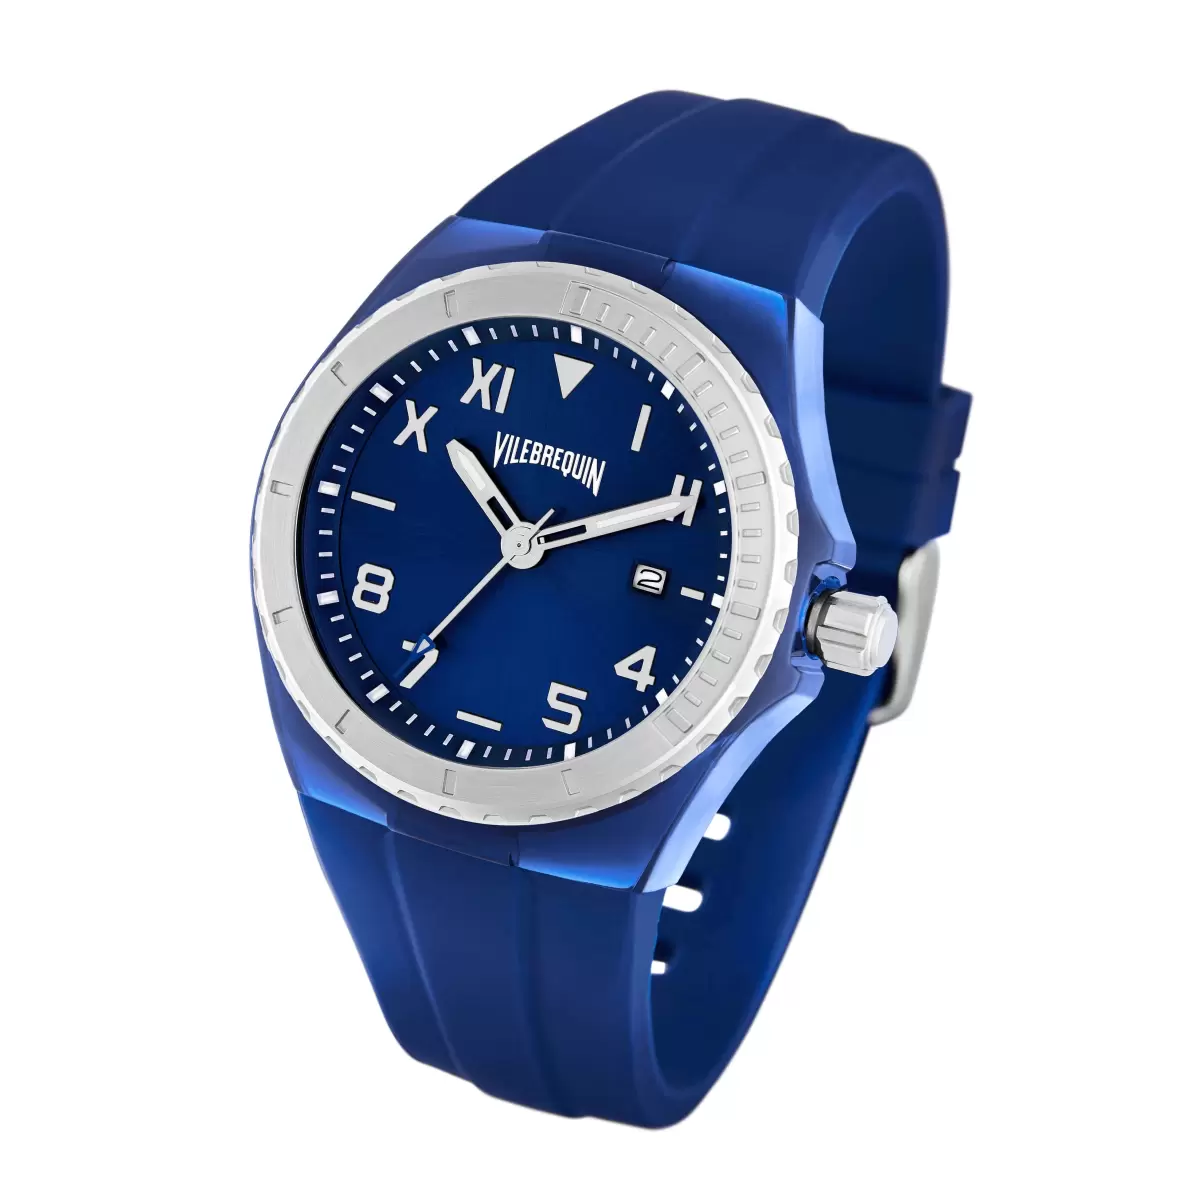 Silikonarmbanduhr Vilebrequin Herren Garantie Uhren Marineblau / Blau - 1